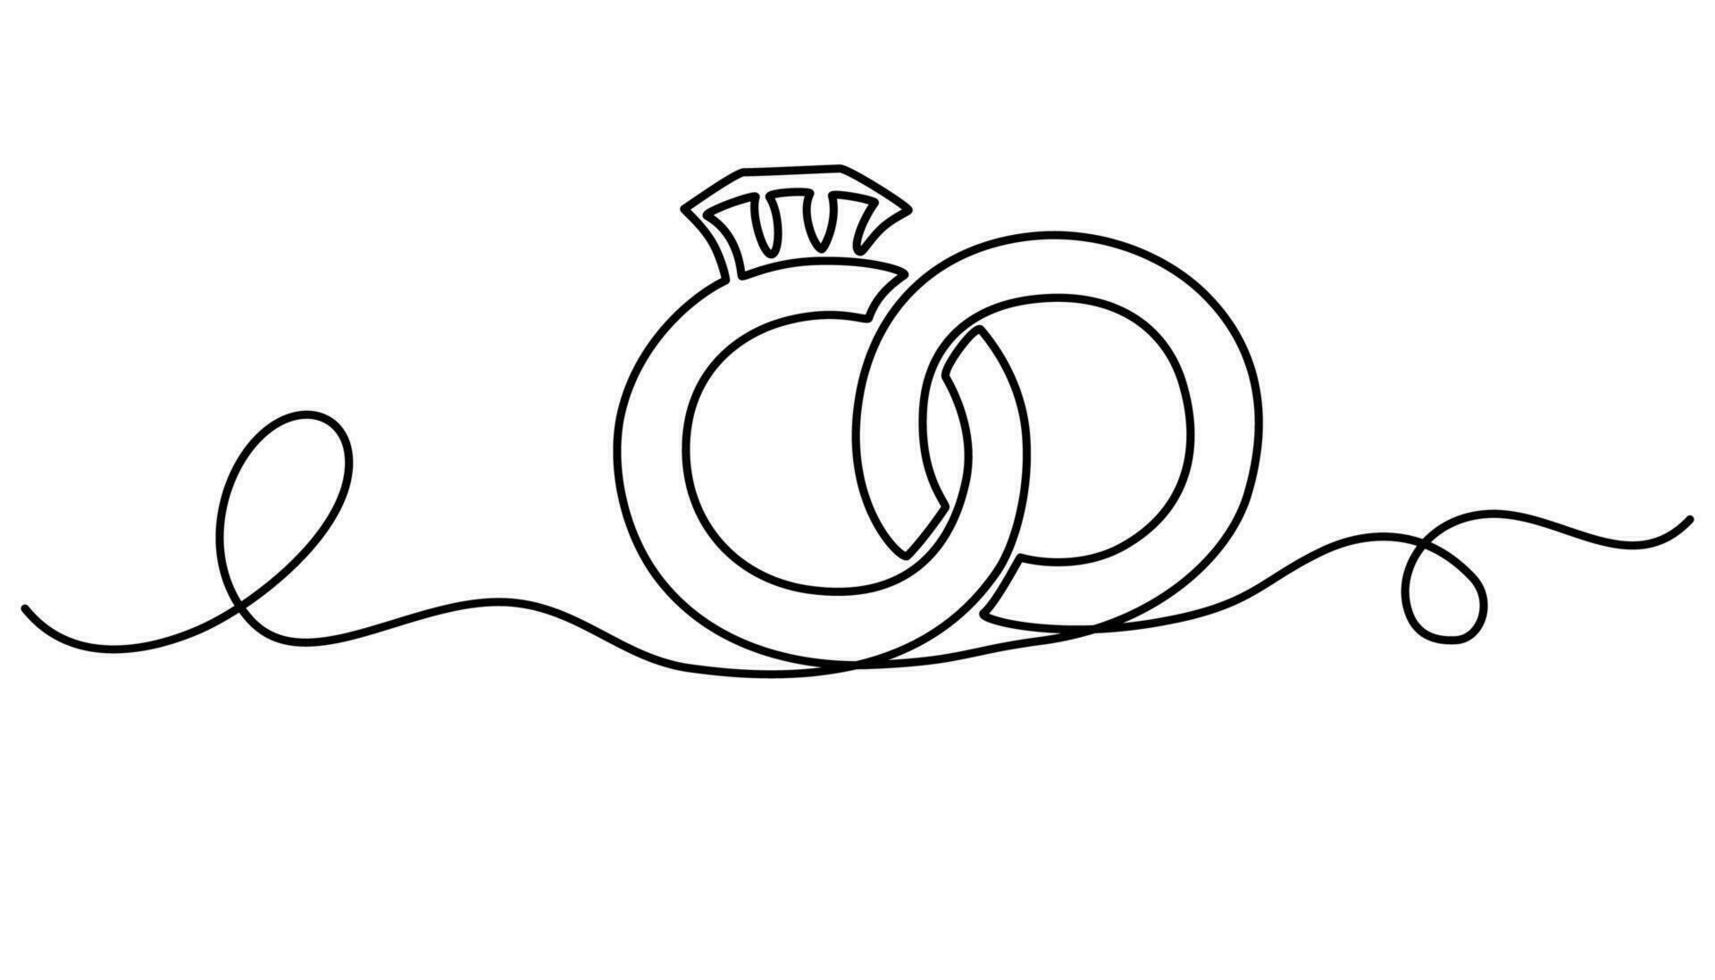 Boda anillos uno continuo línea dibujo. romántico elegancia concepto y símbolo propuesta compromiso y amor matrimonio invitación en sencillo lineal estilo. editable ataque. vector ilustración